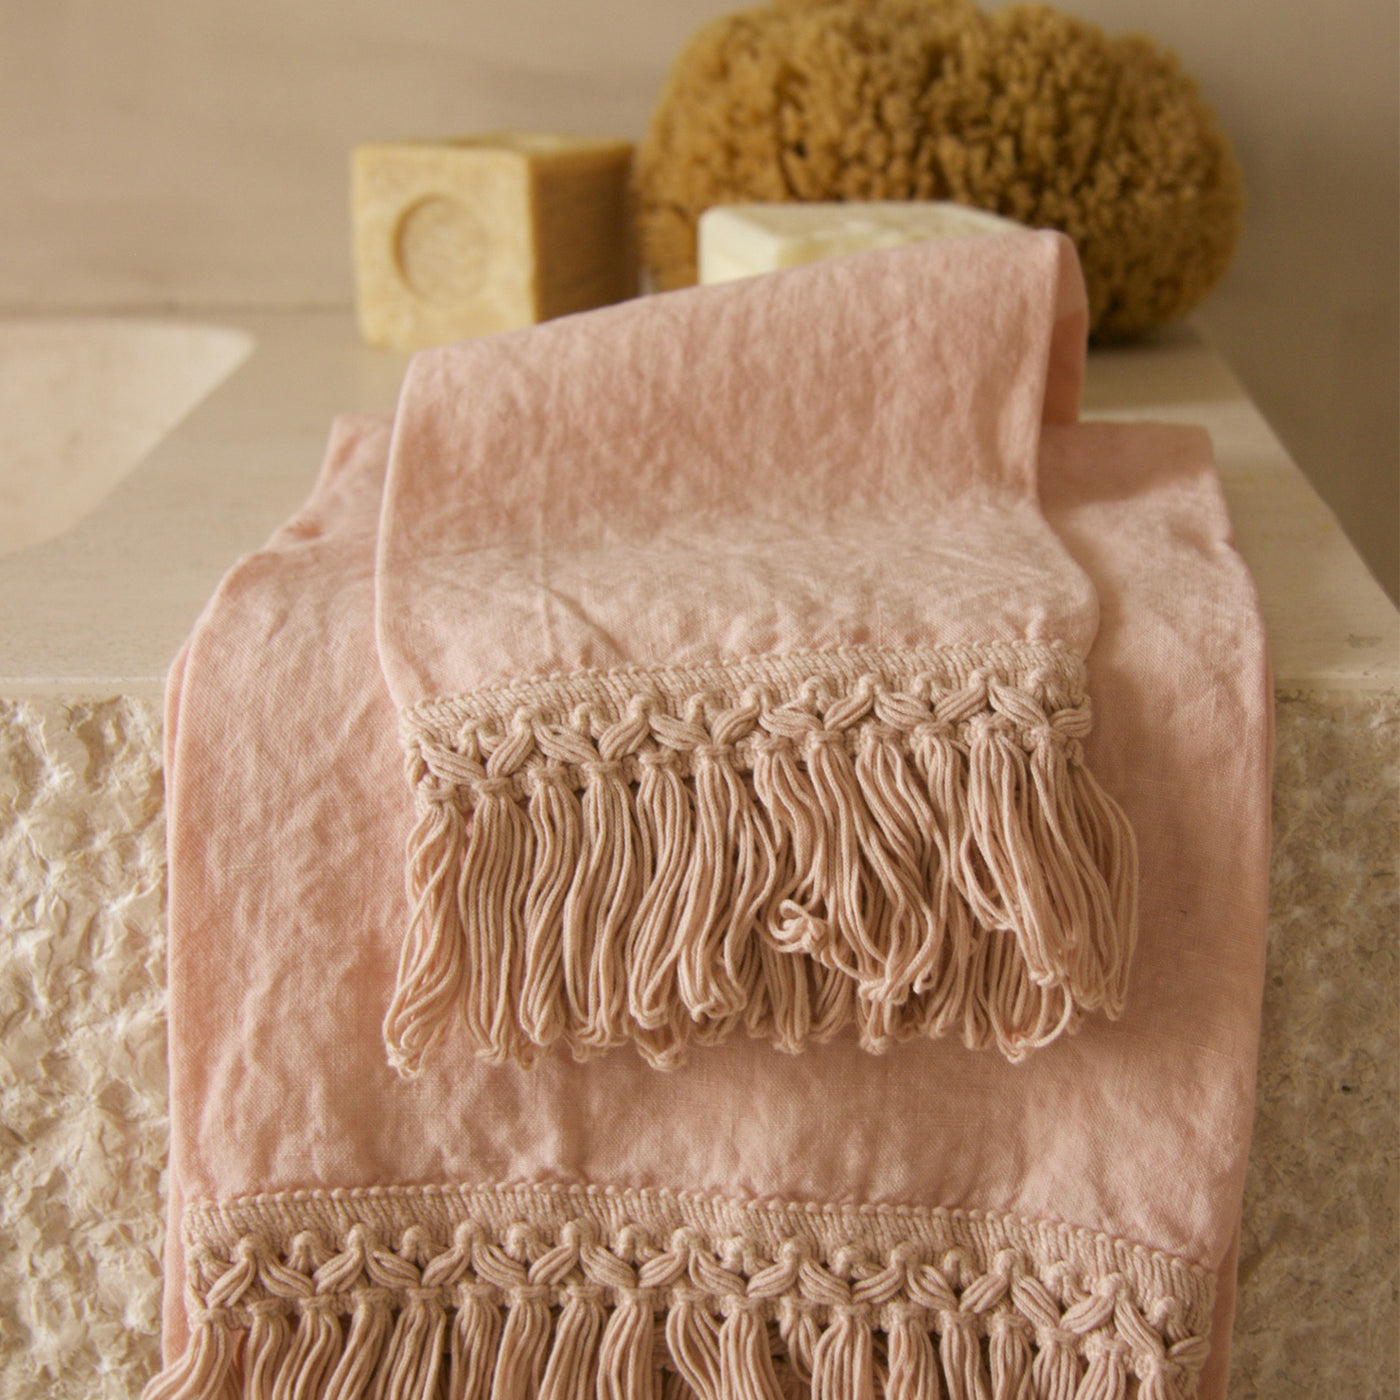 Luxusní lněné ručníky Once Milano, Romein concept store, Lněné ručníky, minimalistické doplňky do koupelny, koupelnové doplňky